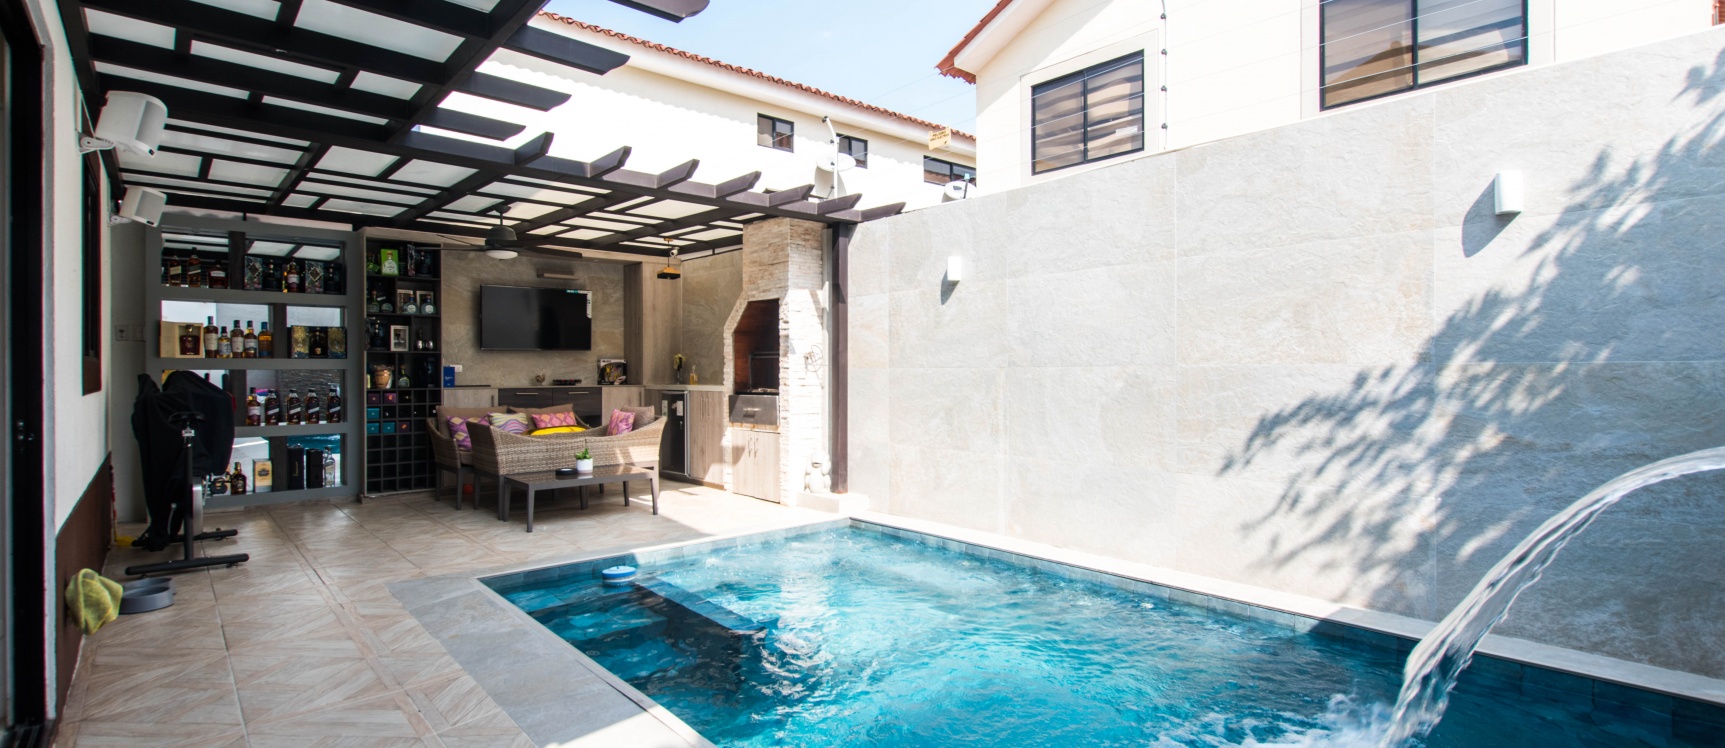 GeoBienes - Venta de casa con piscina, Ciudad Celeste - Plusvalia Guayaquil Casas de venta y alquiler Inmobiliaria Ecuador